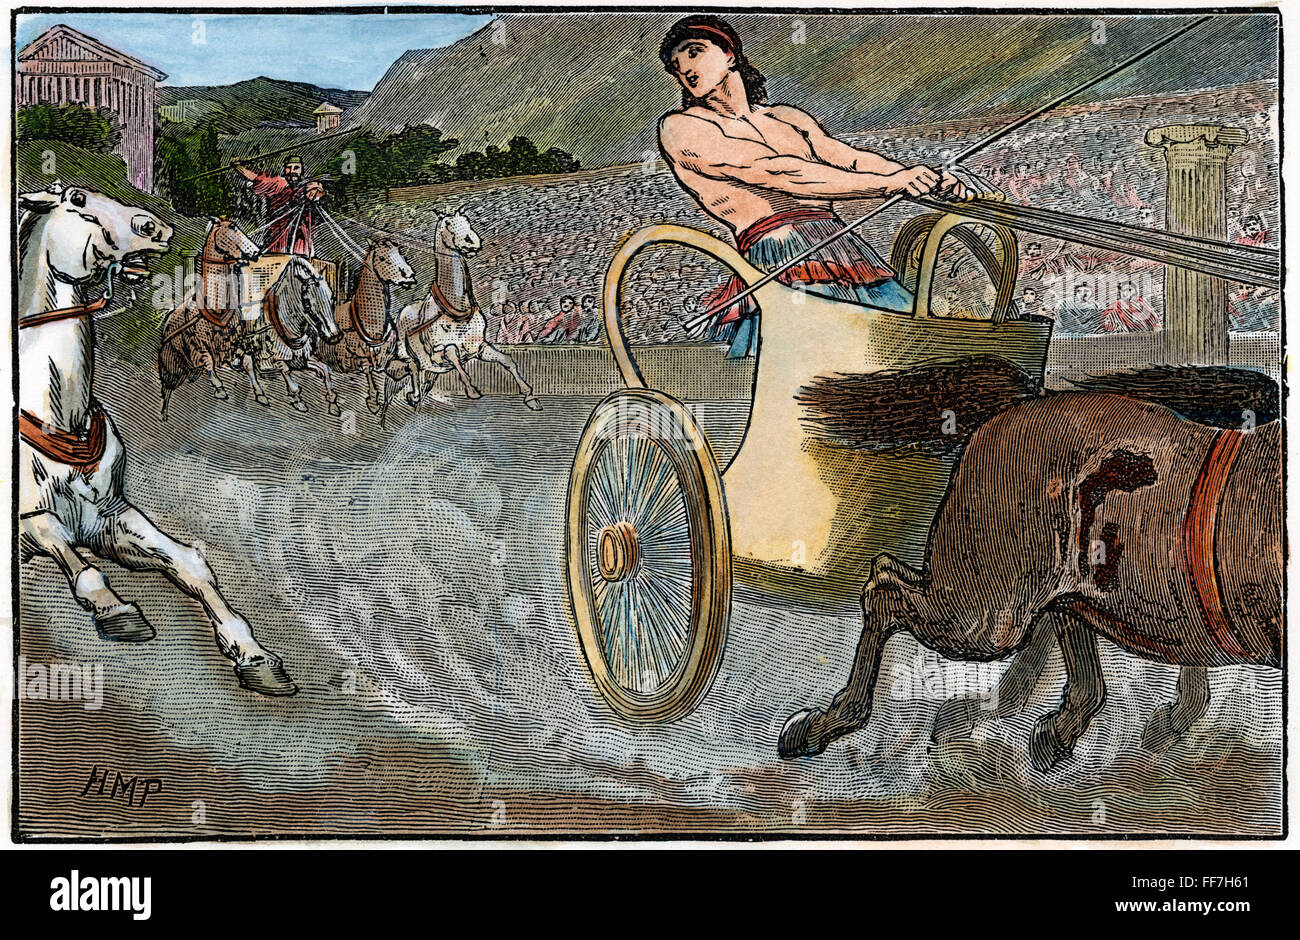 Giochi olimpici antichi. /N'Clisthenes nei Giochi Olimpici." Un xix secolo incisione su legno che illustra i giochi di antichità greca. Foto Stock